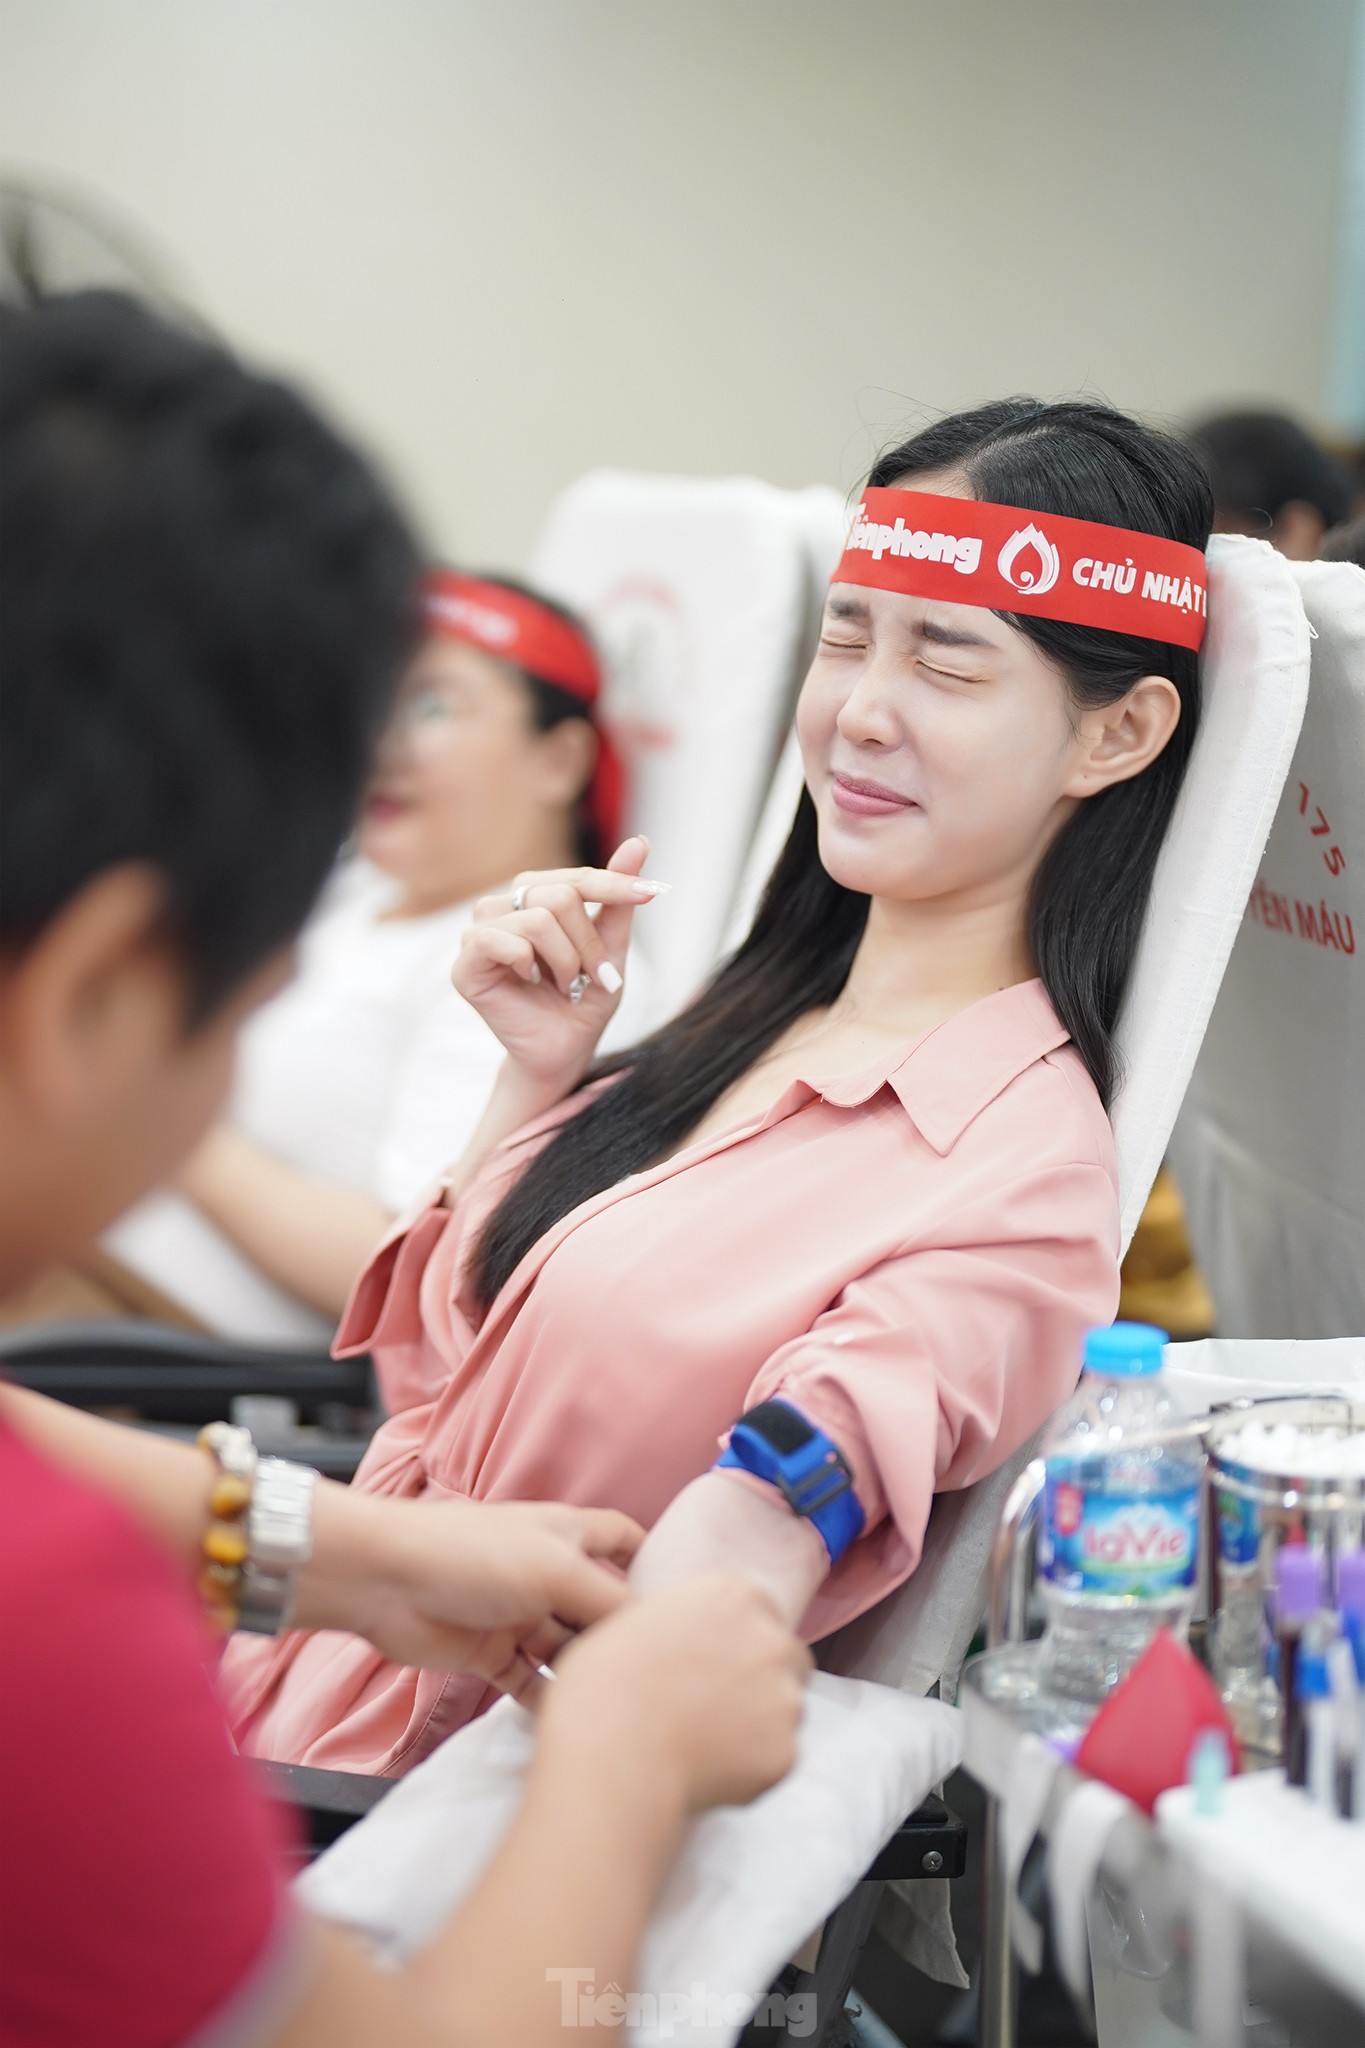 Sôi nổi ngày hội hiến máu Chủ nhật Đỏ tại trụ sở công ty Amway Việt Nam ảnh 8